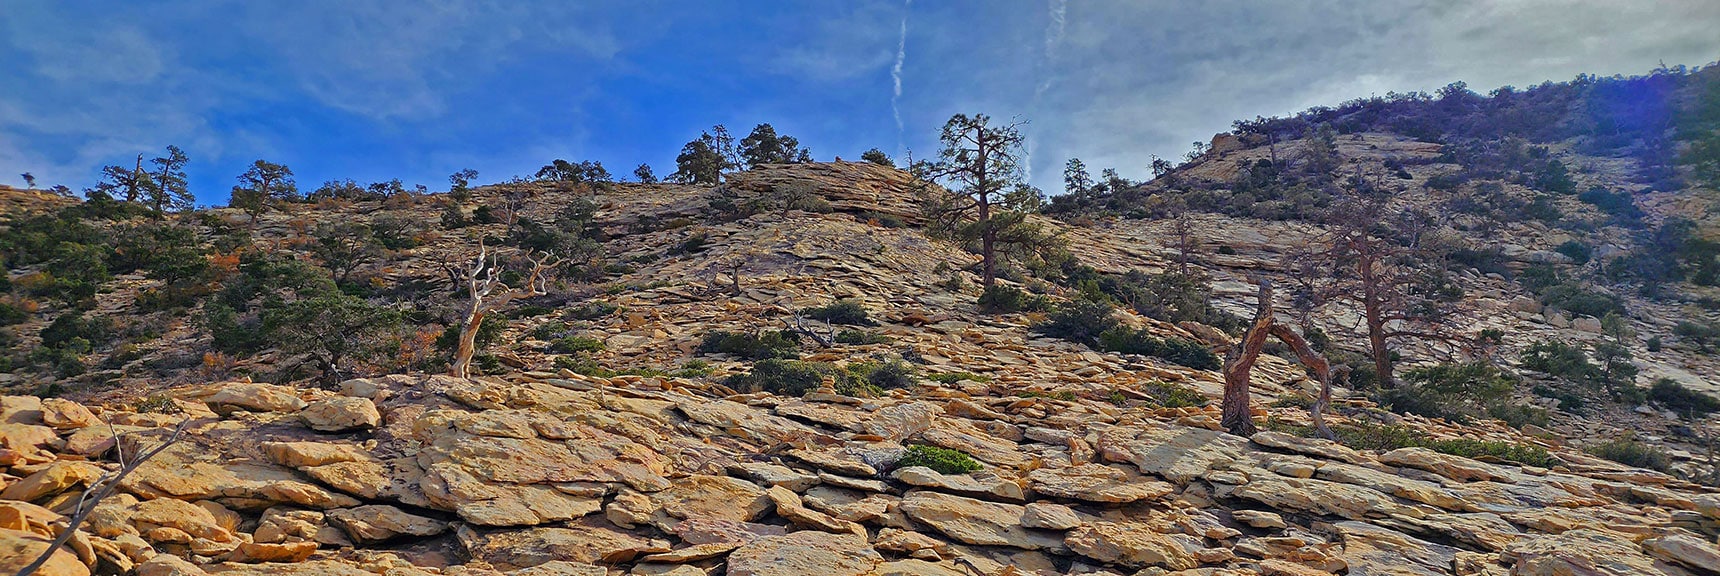 Jurassic Sandstone Formations Begin Near the Upper Ridgeline. Dangerous When Icy or Wet. | North Upper Crest Ridgeline | Rainbow Mountain Wilderness, Nevada